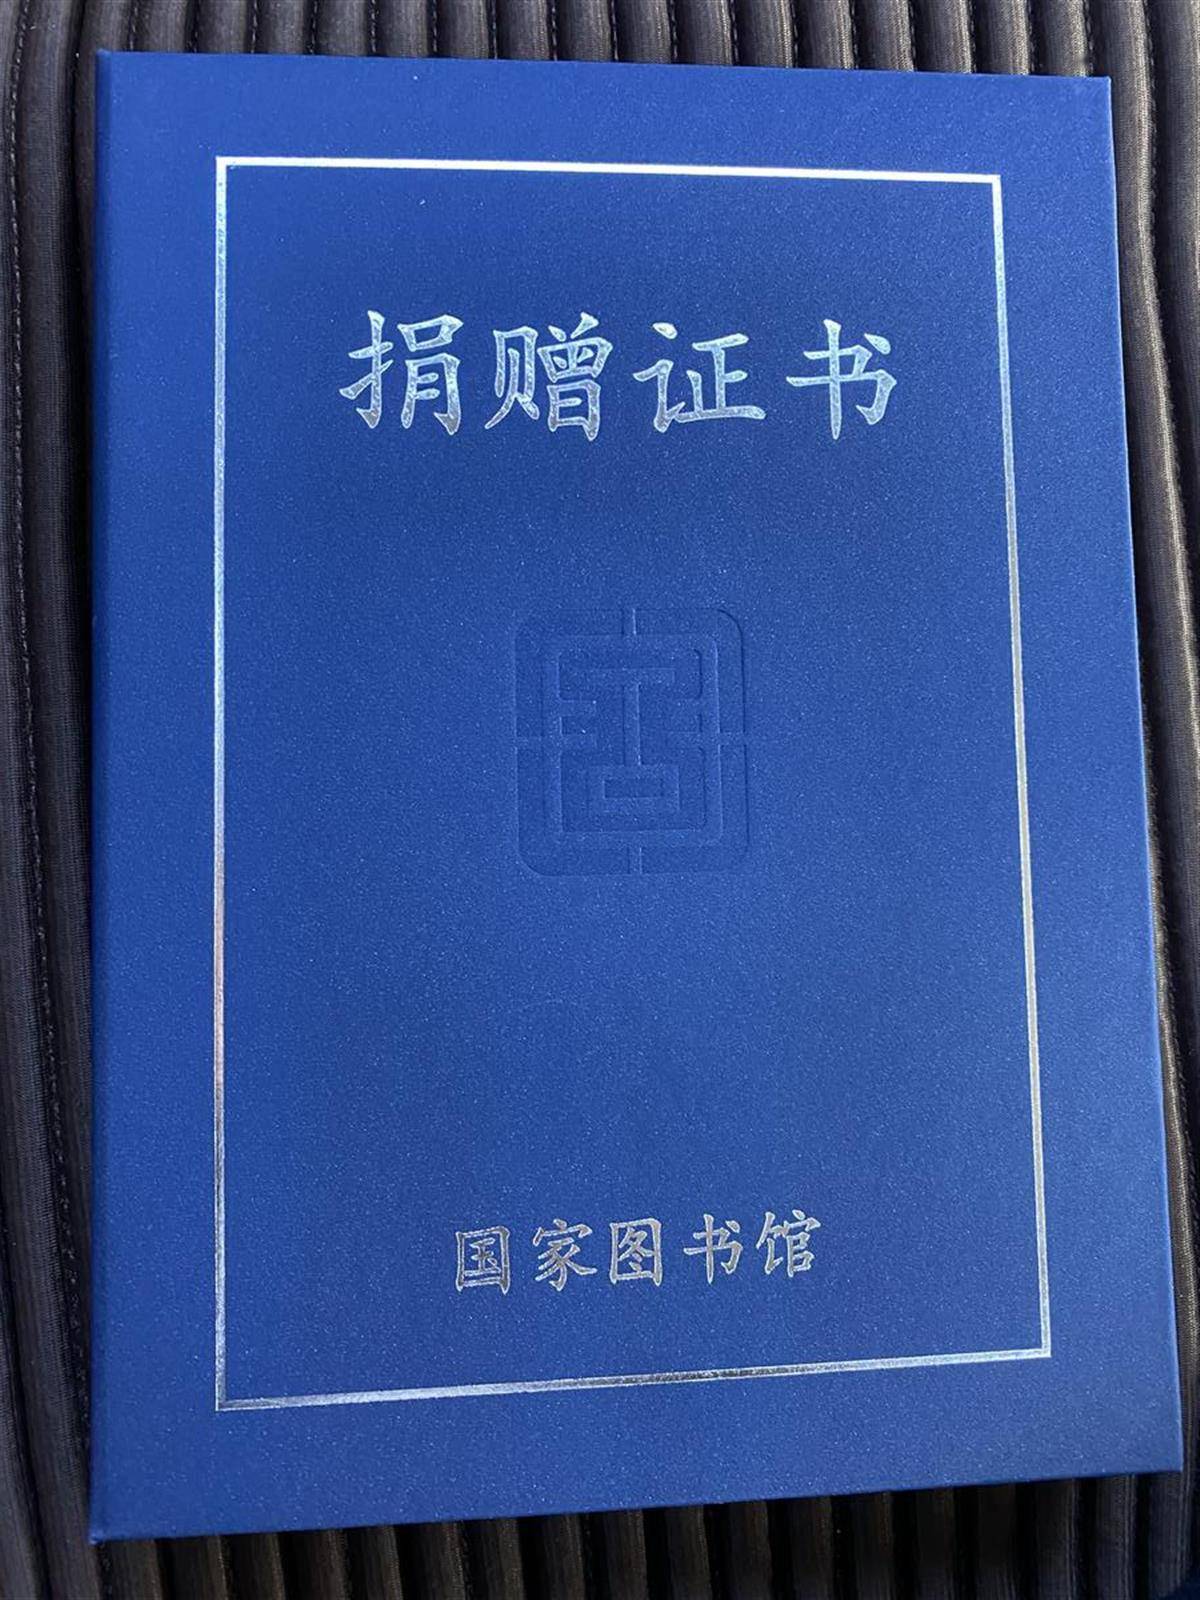 《武汉日记》抗疫纪录片三部曲捐赠中国国家图书馆